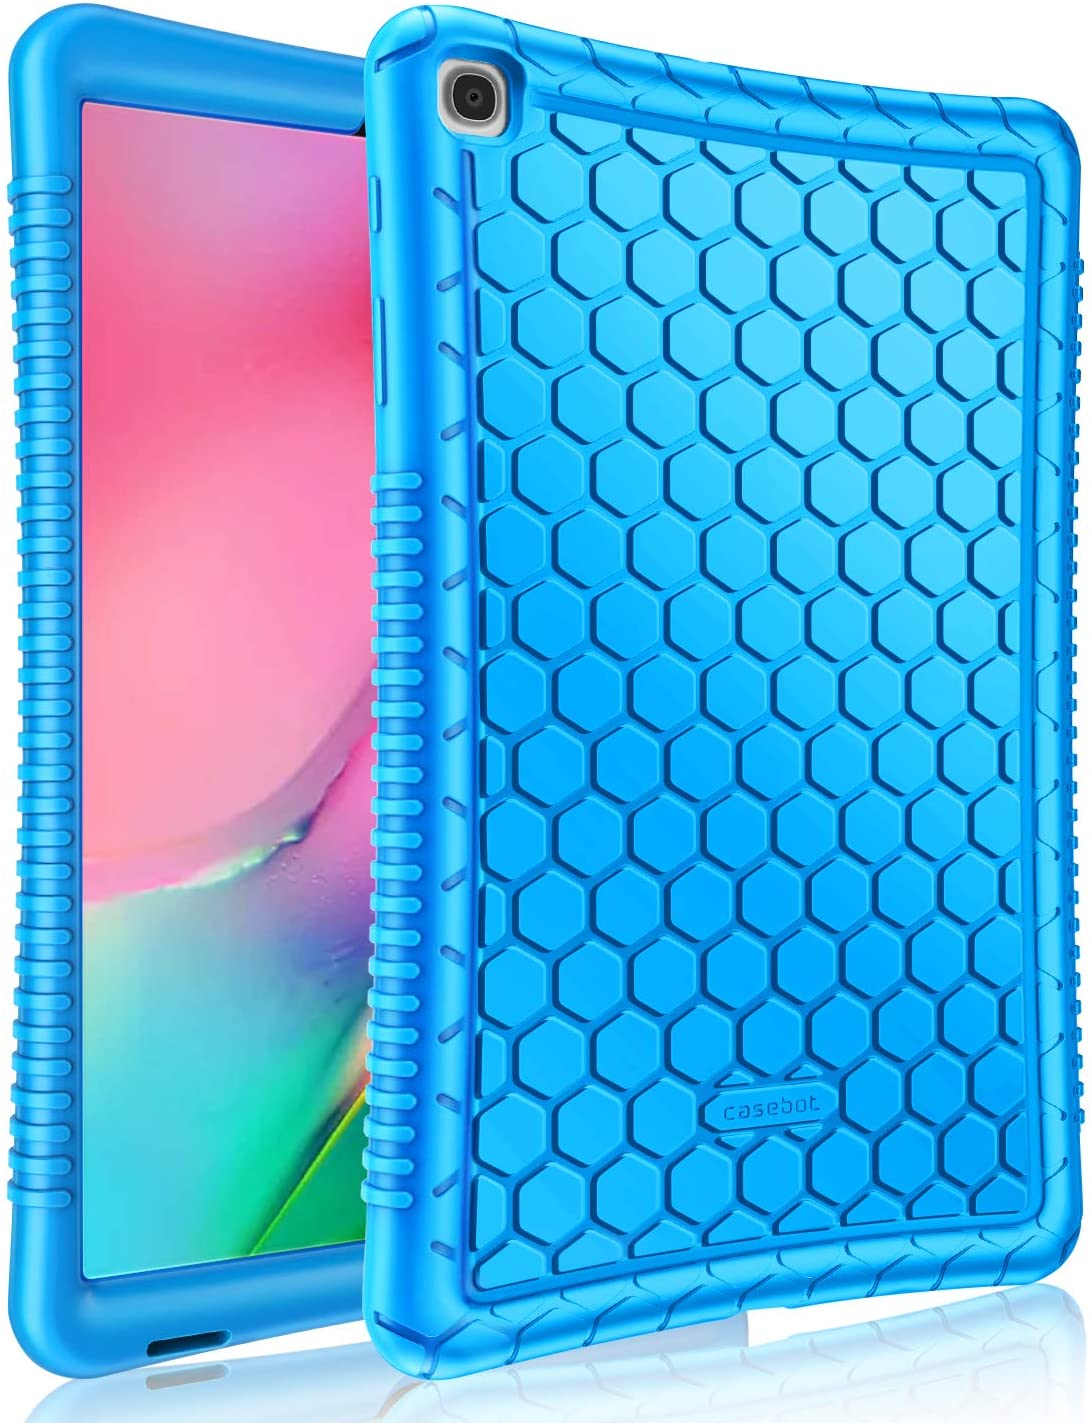 Samsung Galaxy Tab A 10.1 Case Silicone Blue